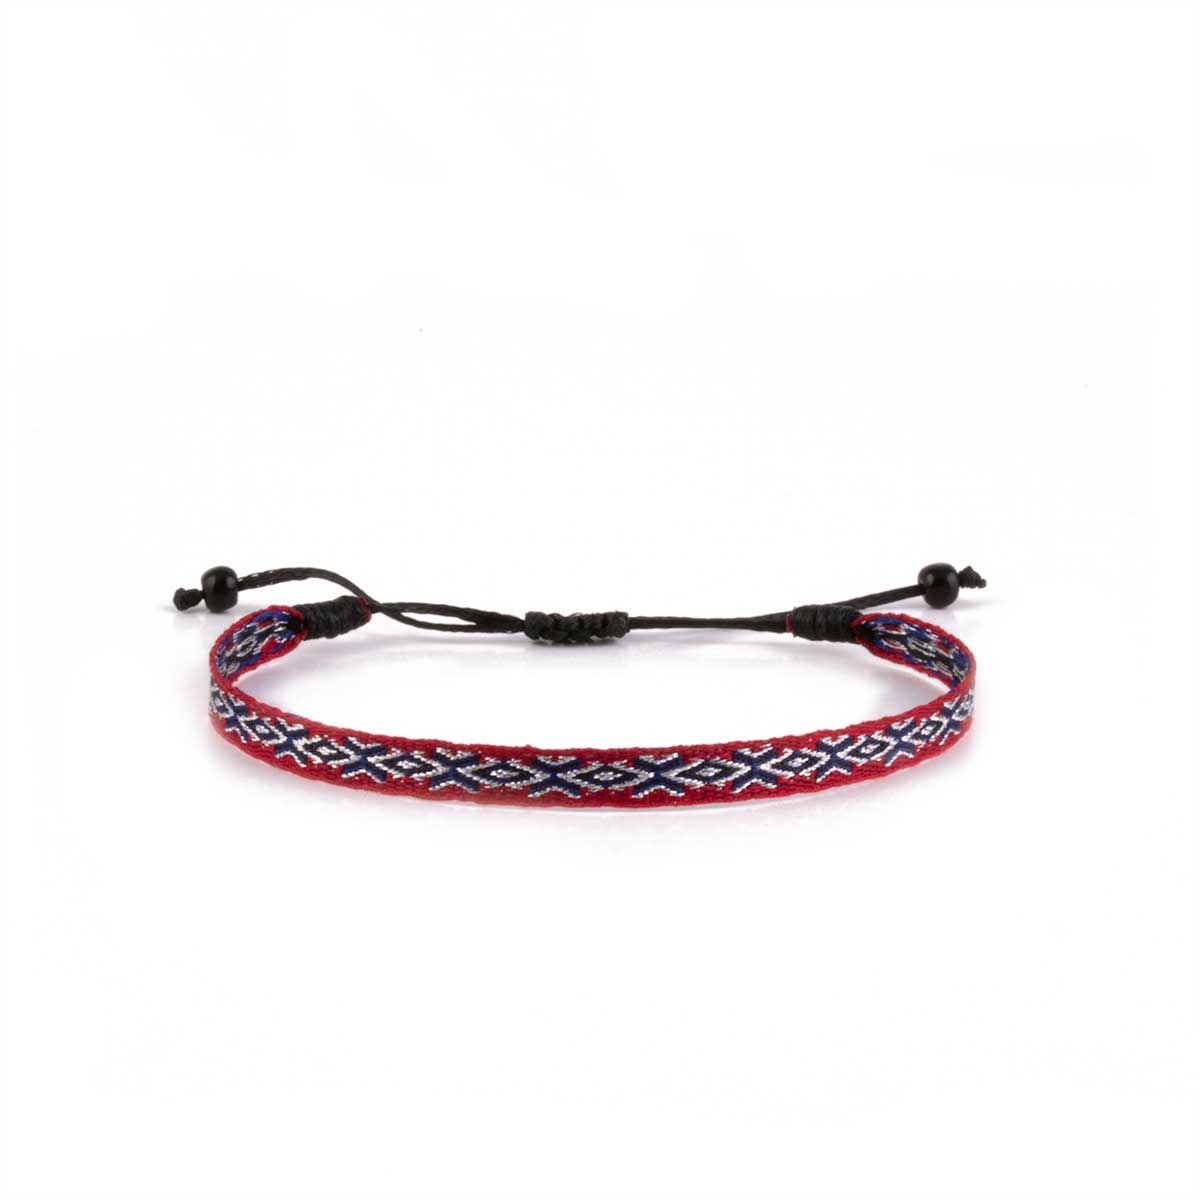 Bracelets ruban tissé à motifs (noir, bleu, vert, rouge...)